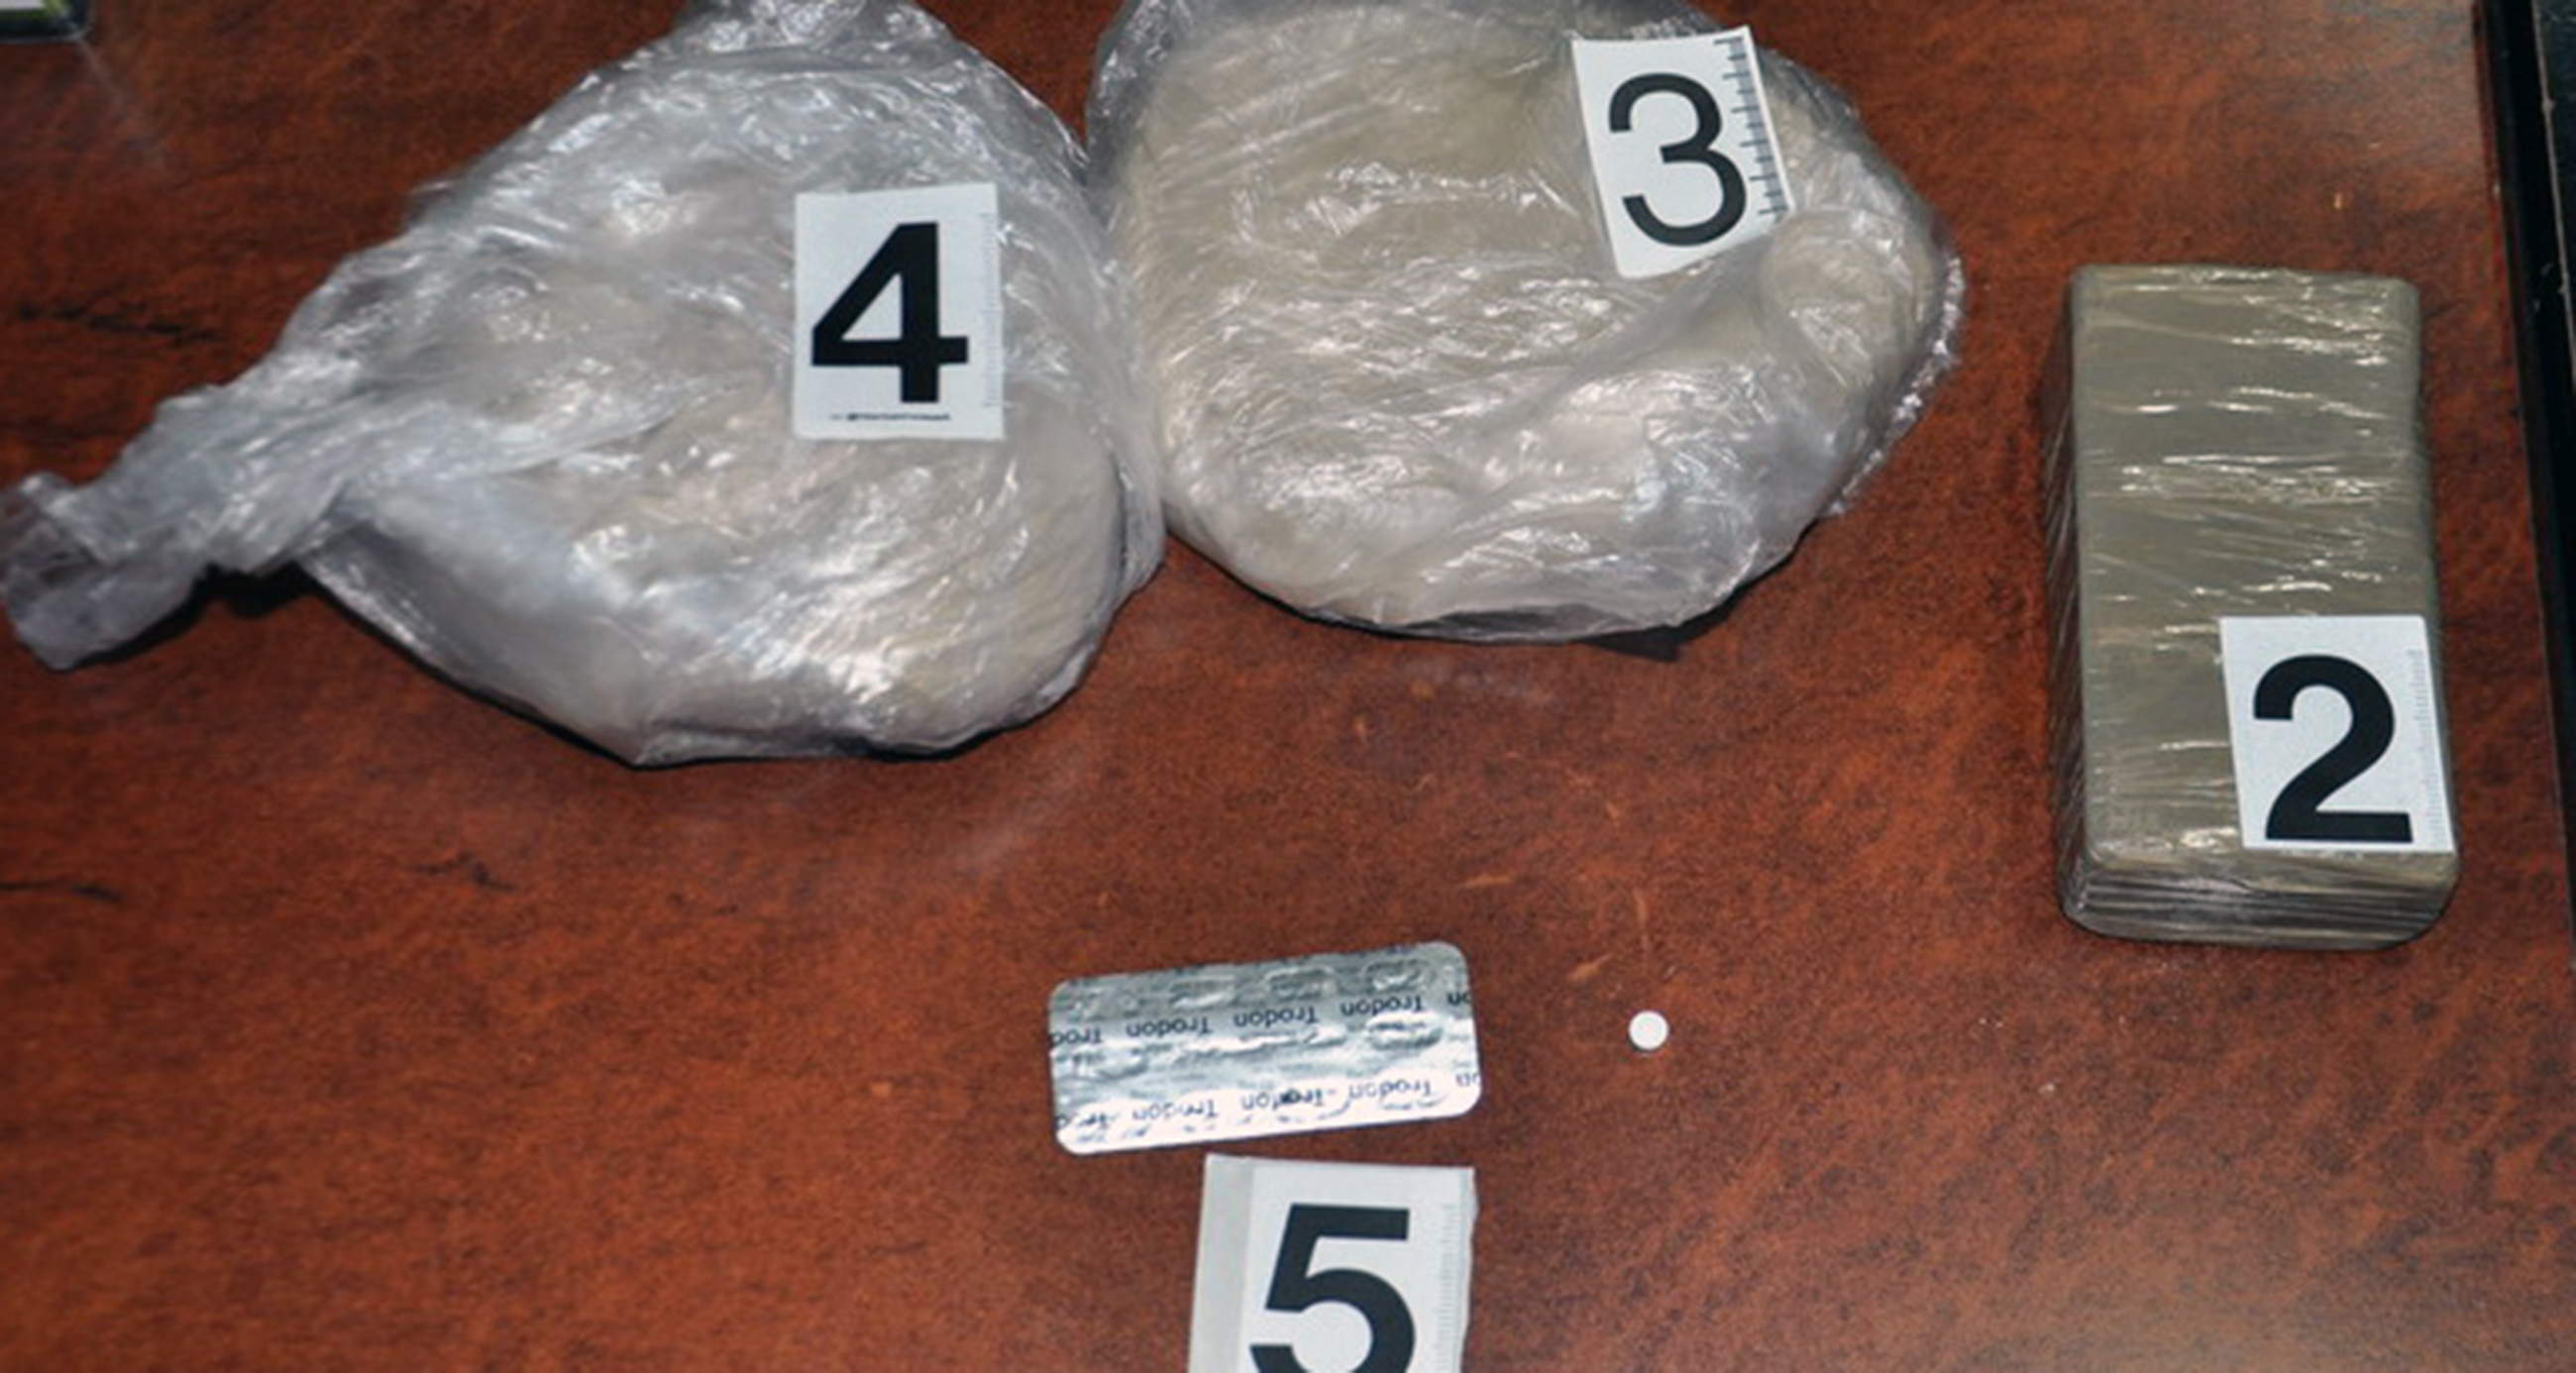 Полиција пронашла 1,4 килограма хероина у аутомобилу осумњиченог